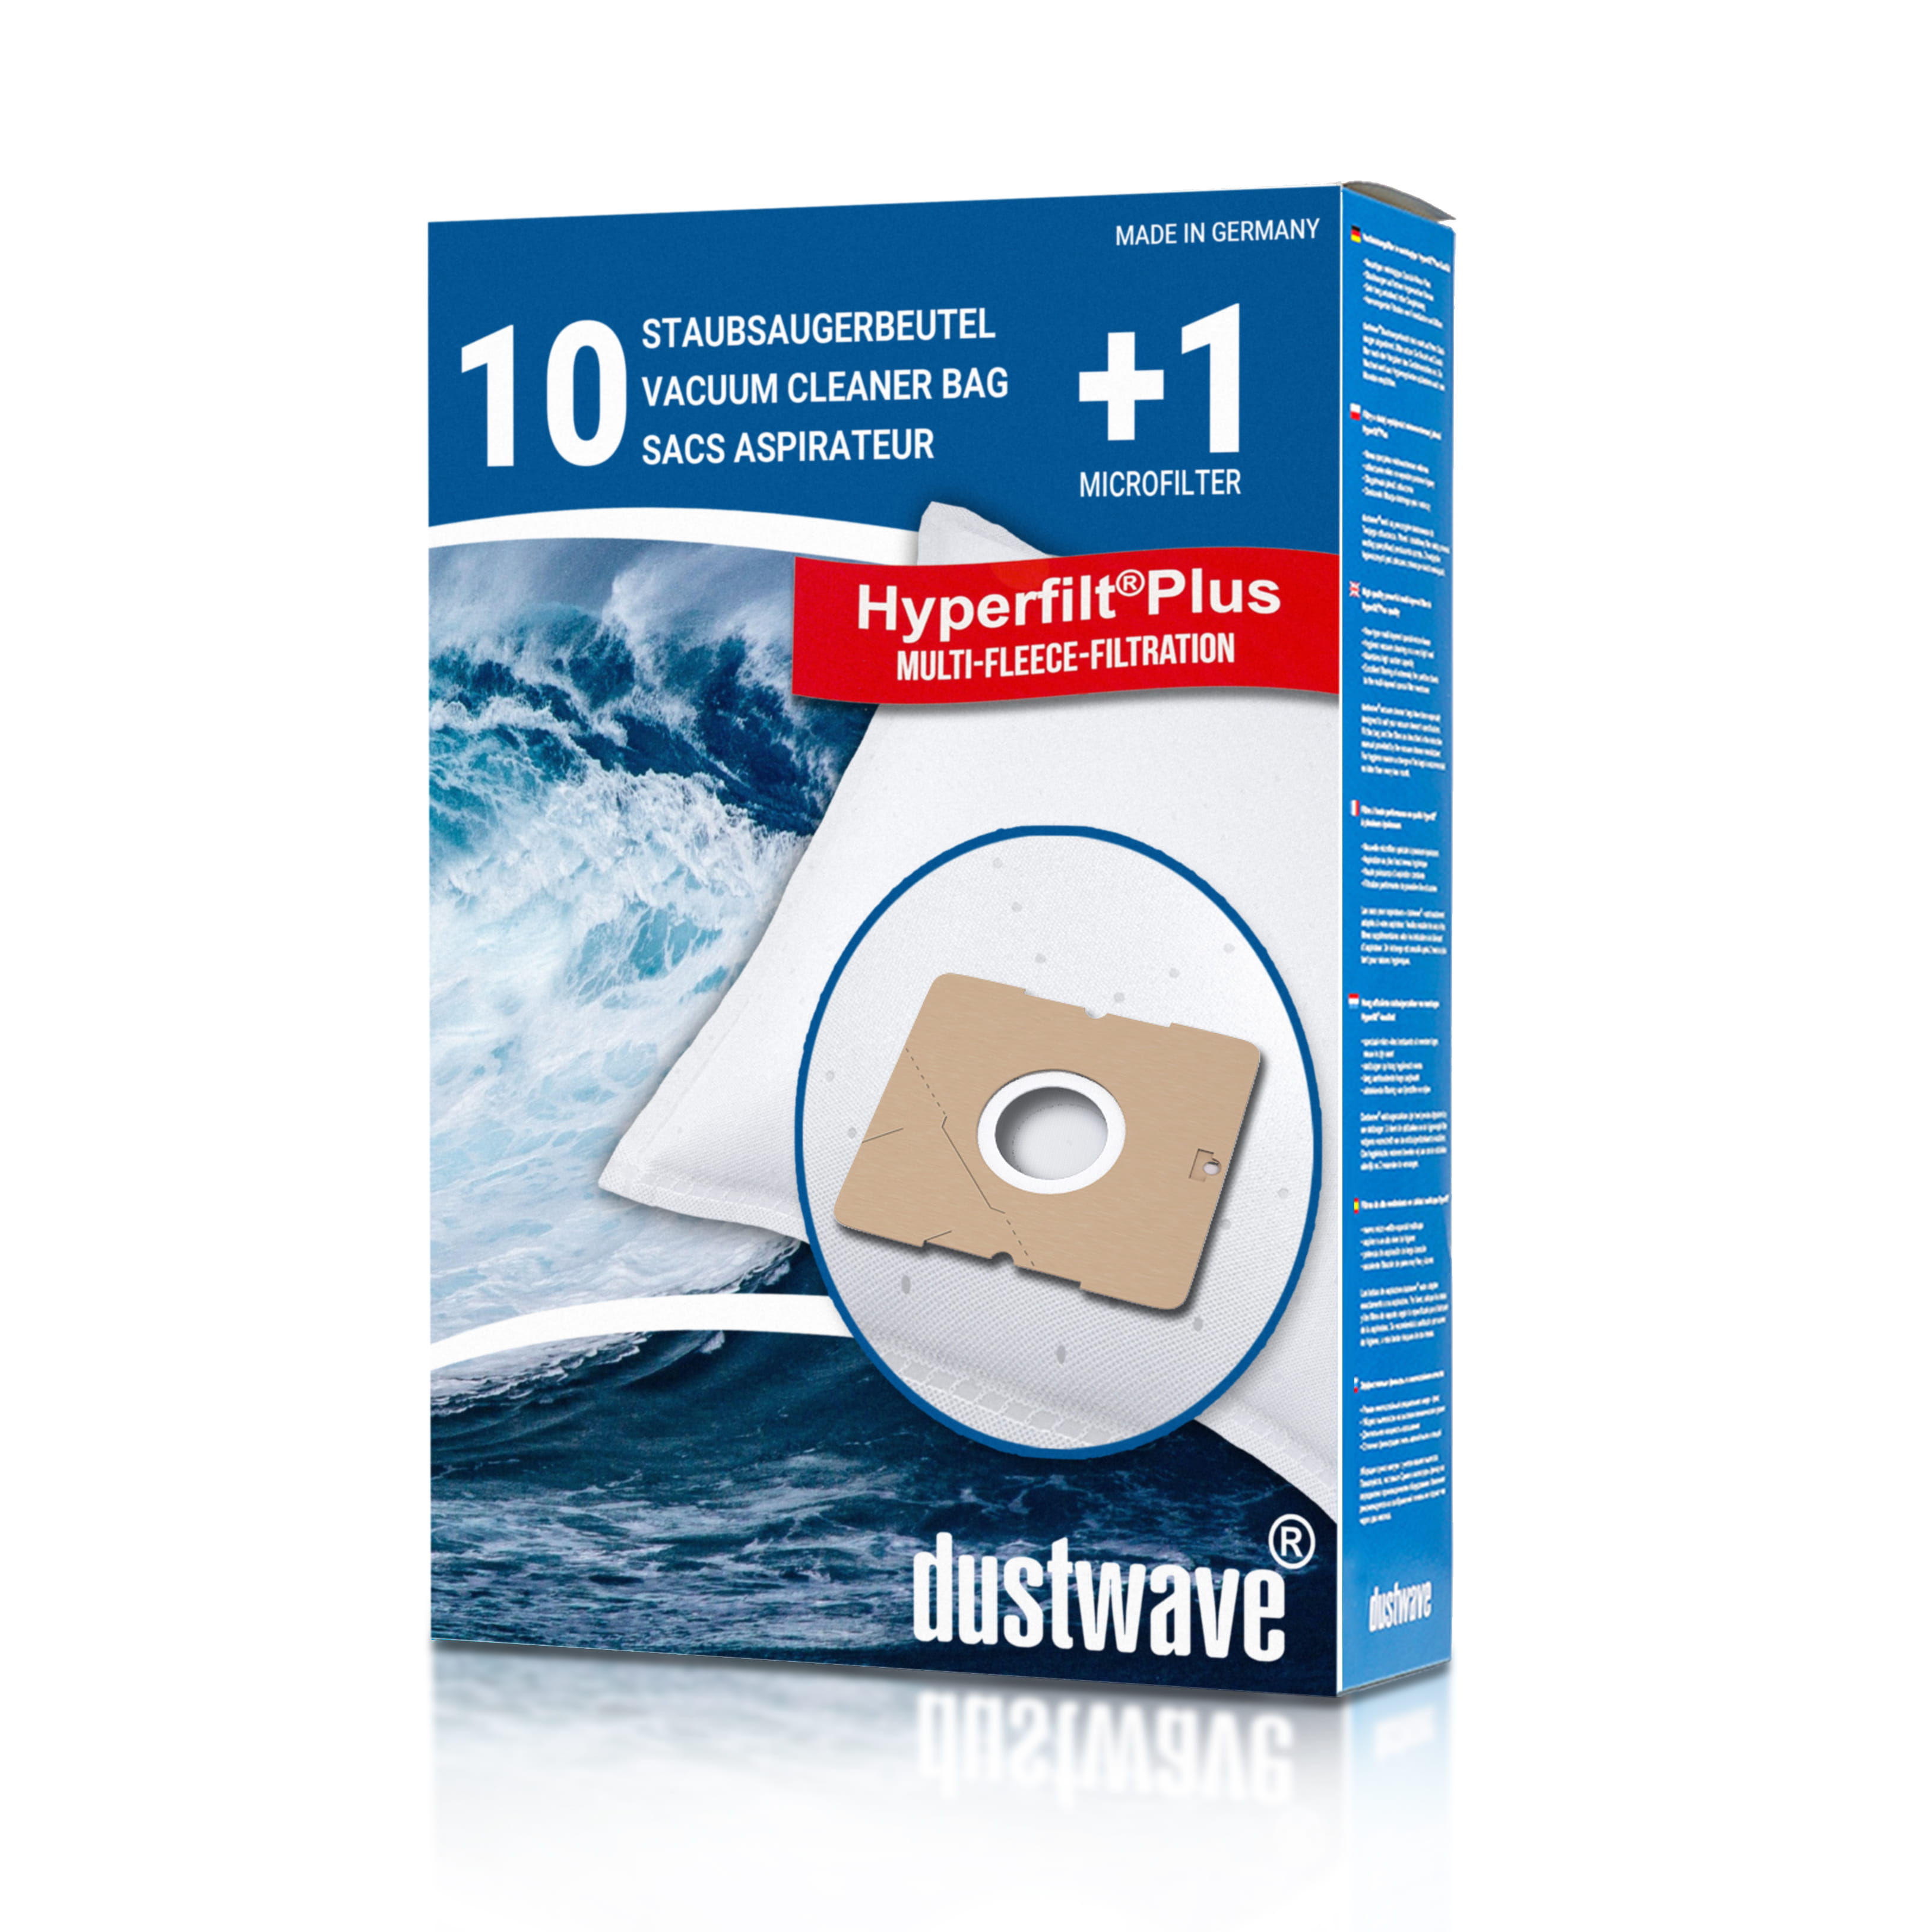 Dustwave® 10 Staubsaugerbeutel für Comfee CBC 130SA - hocheffizient mit Hygieneverschluss - Made in Germany